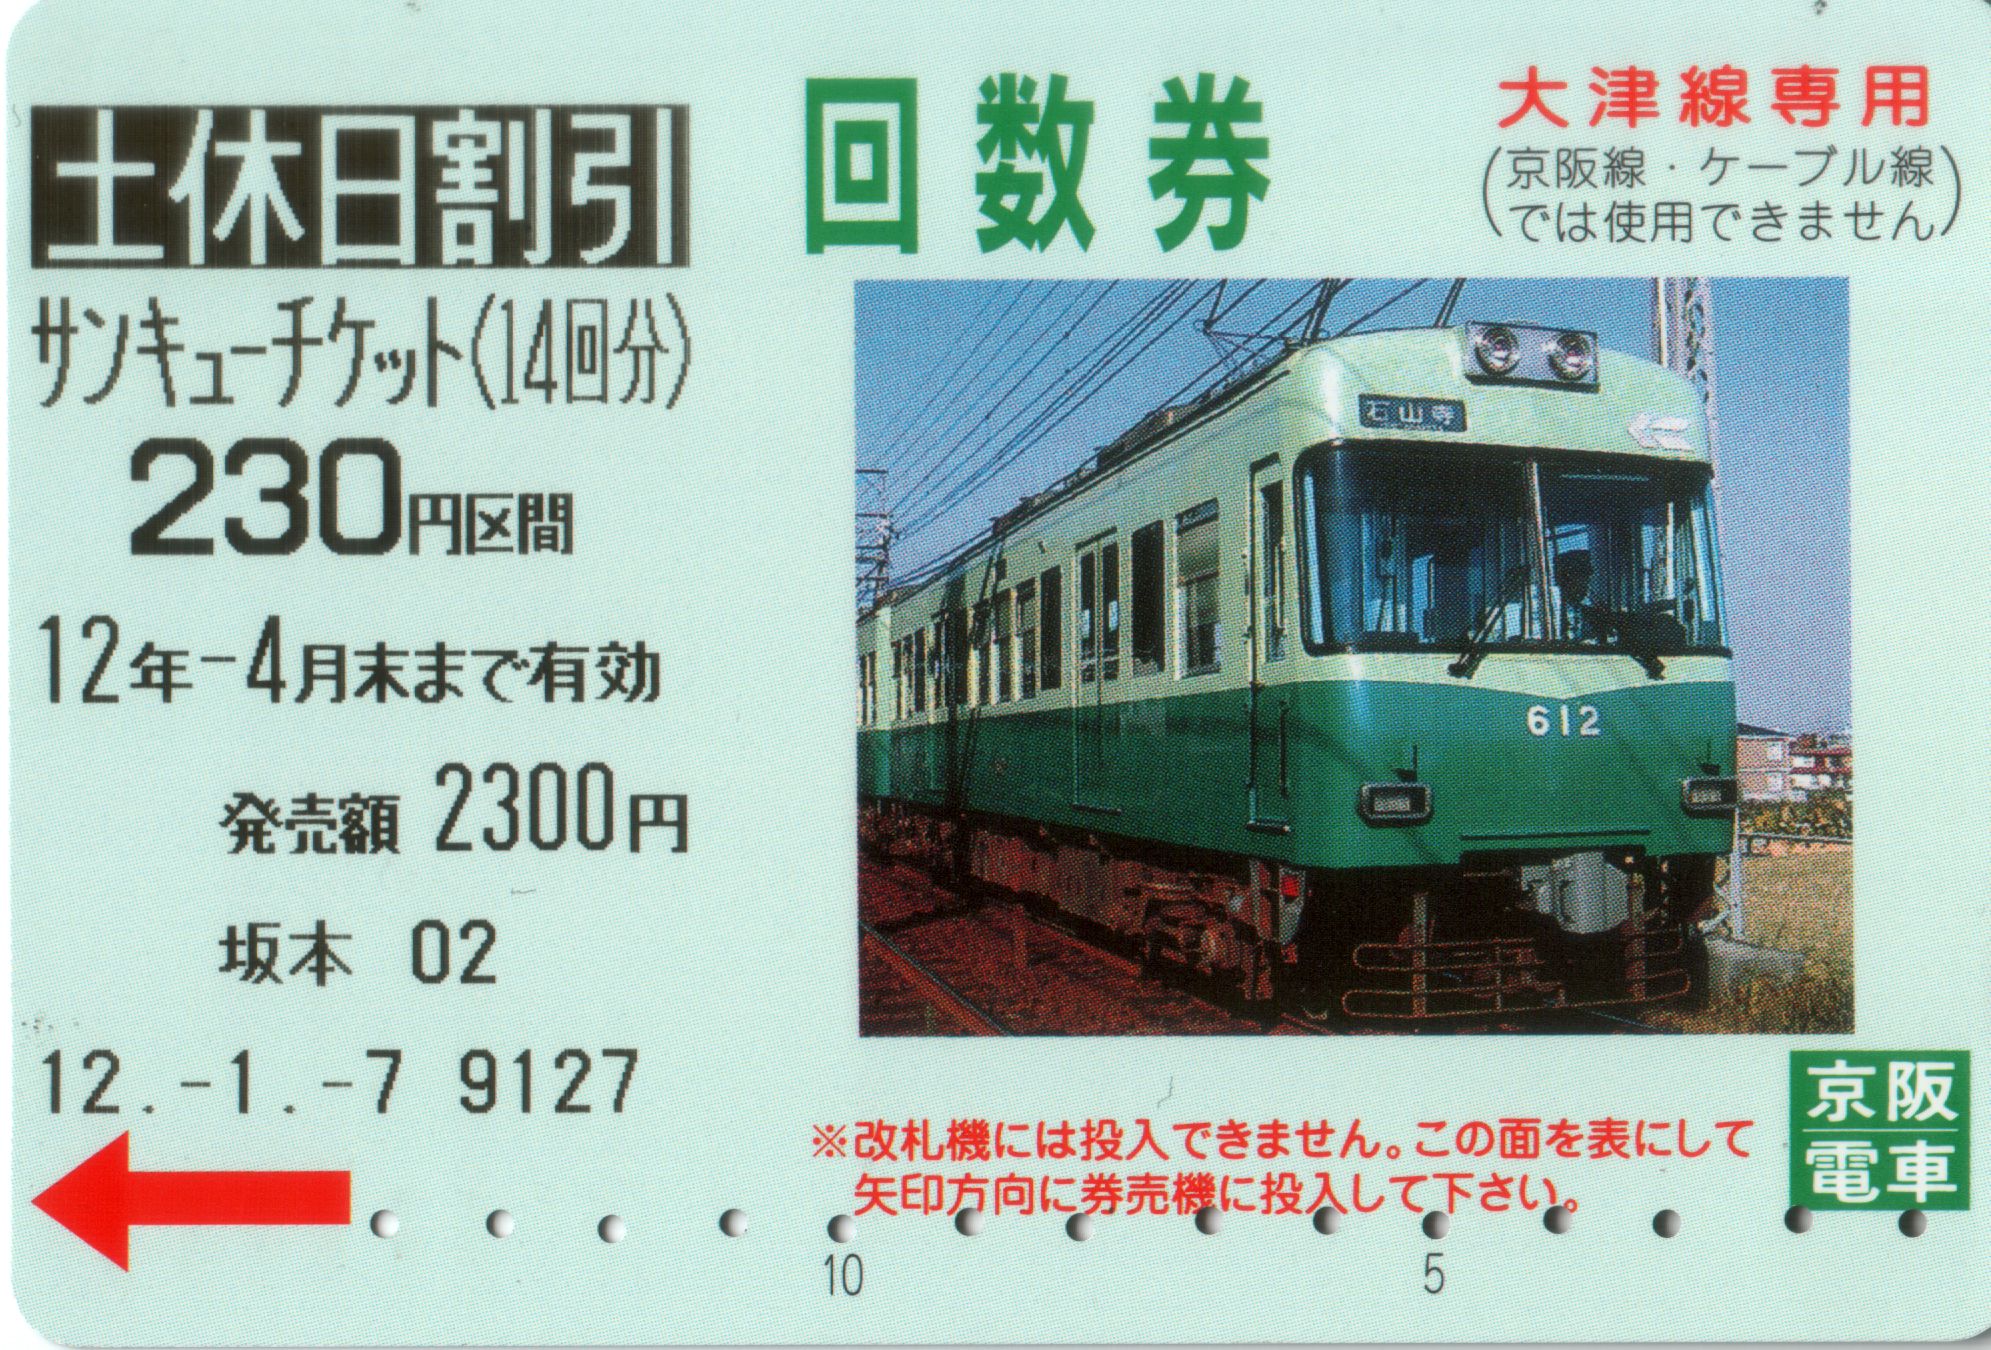 Ohtsu Area Coupn Ticket